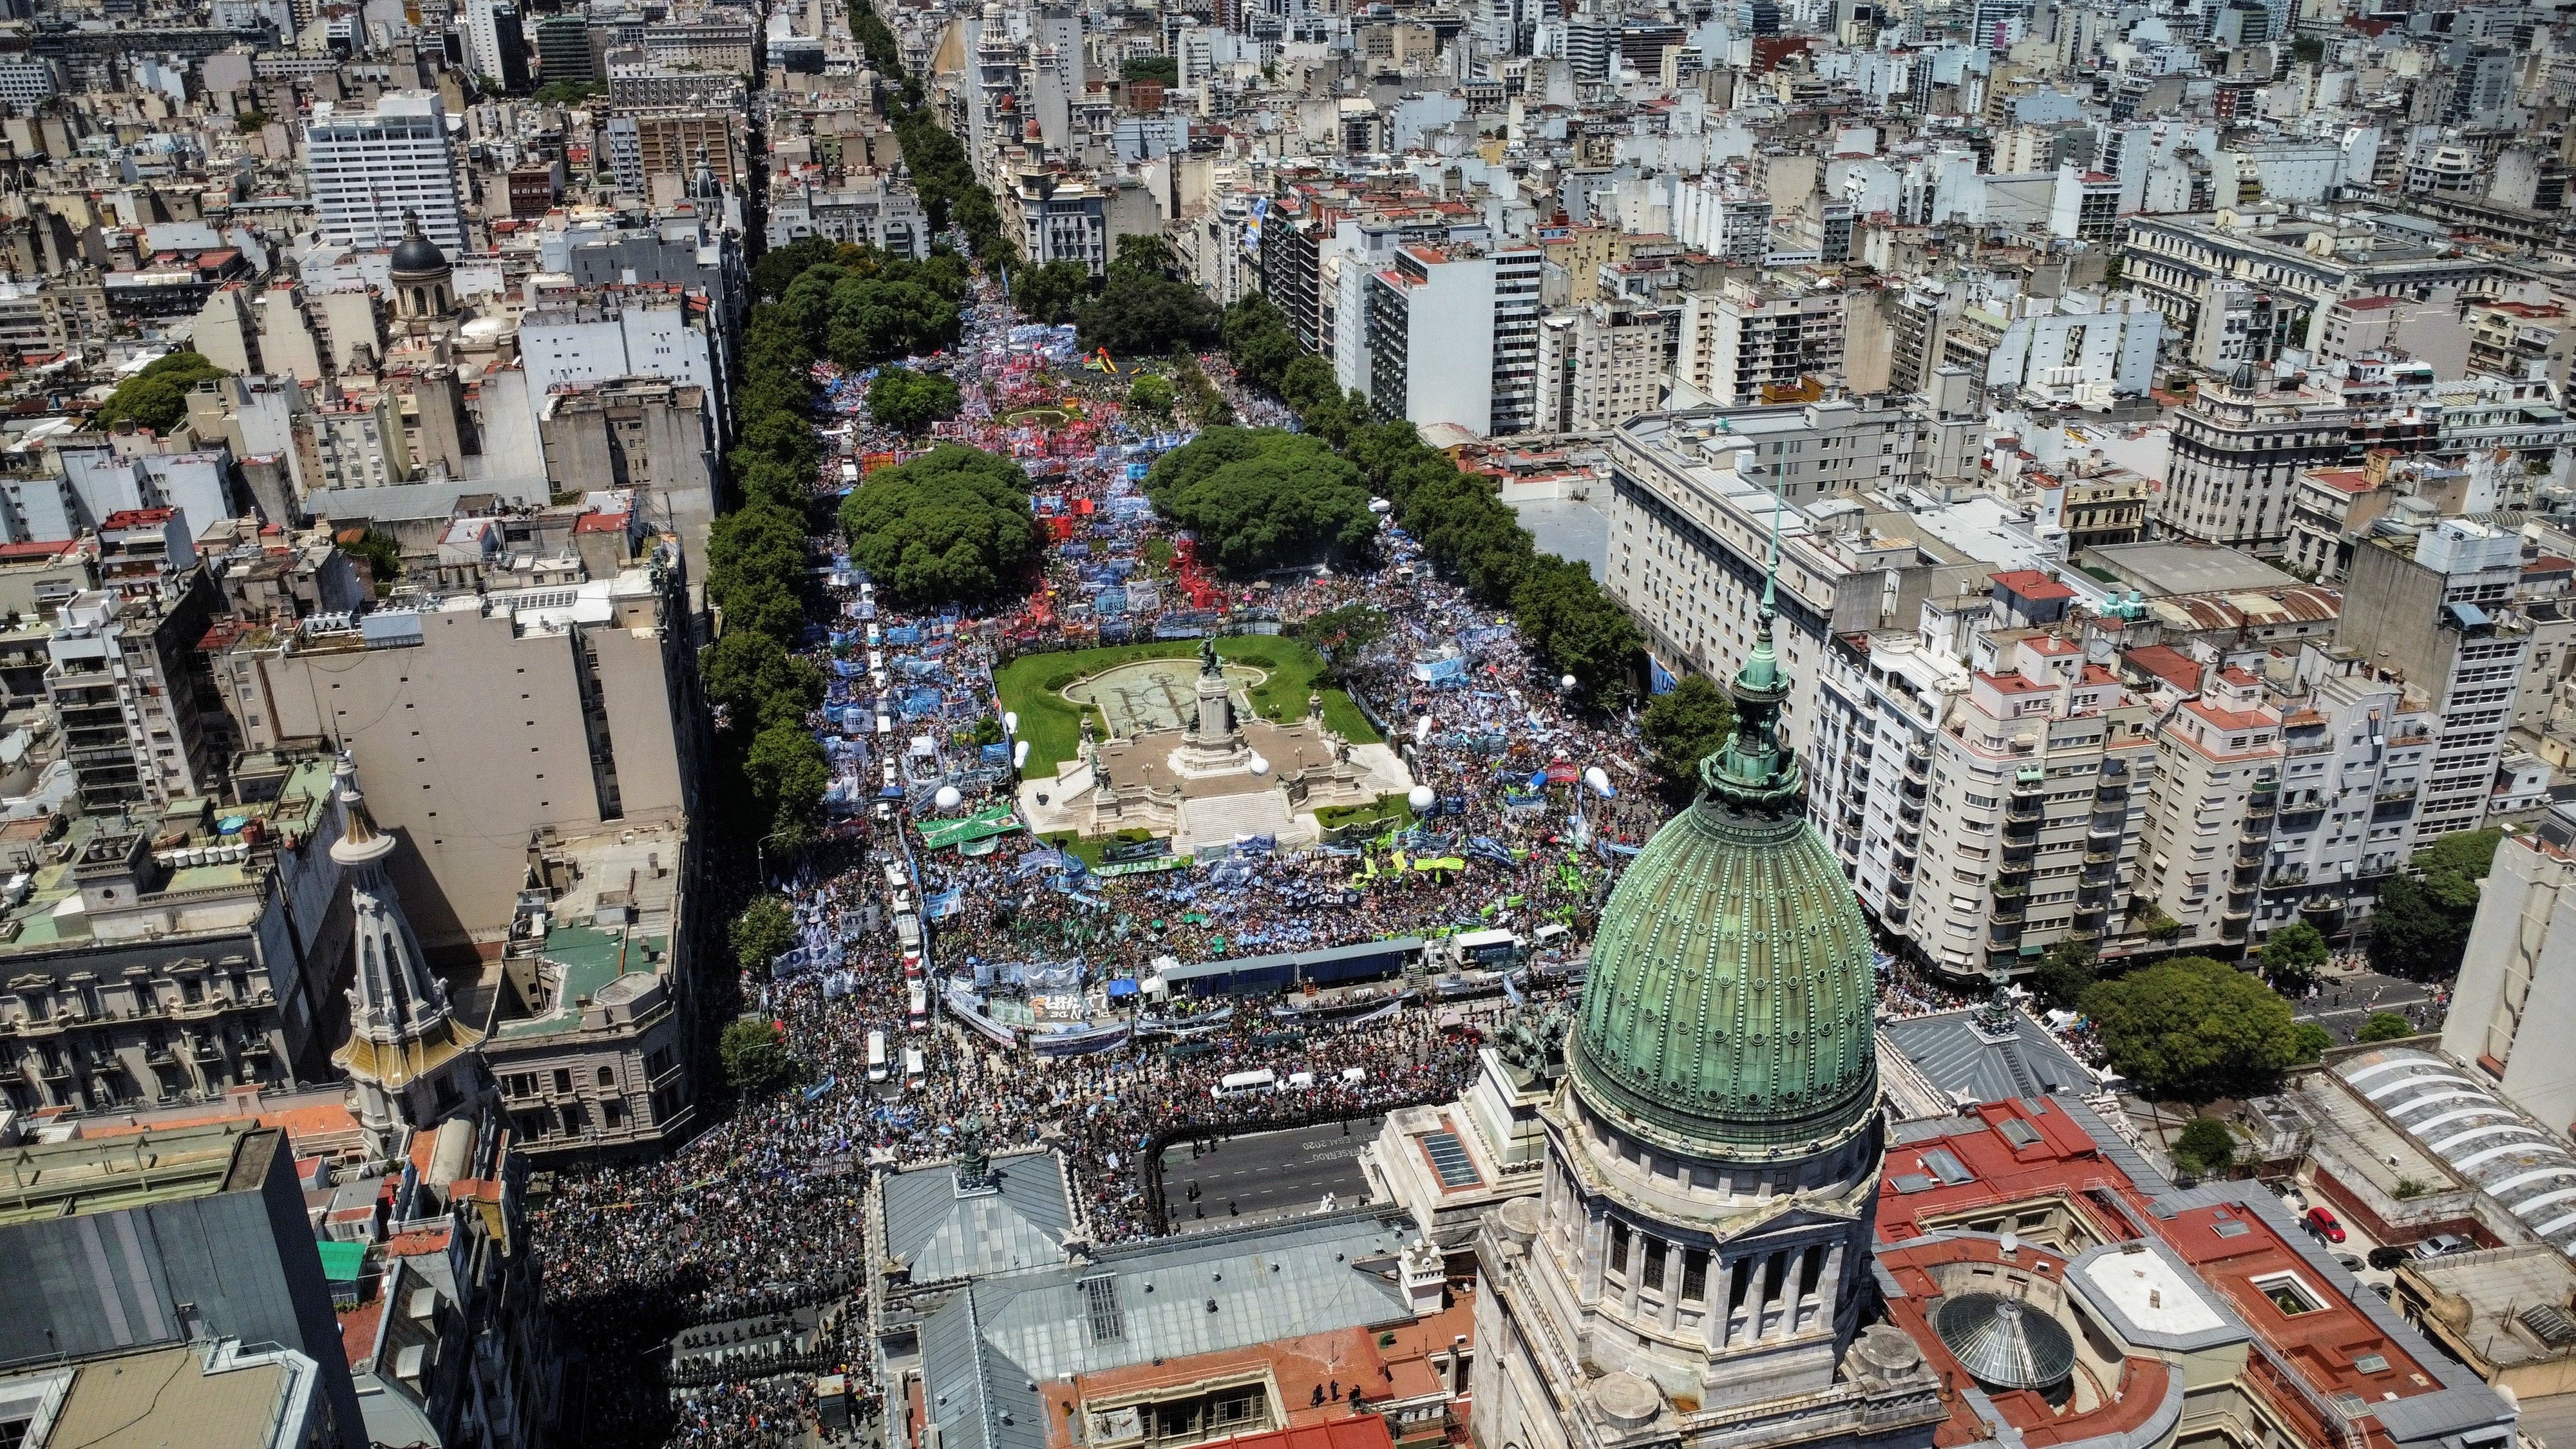 polémica por el aumento de sueldos de senadores se toma el debate en argentina